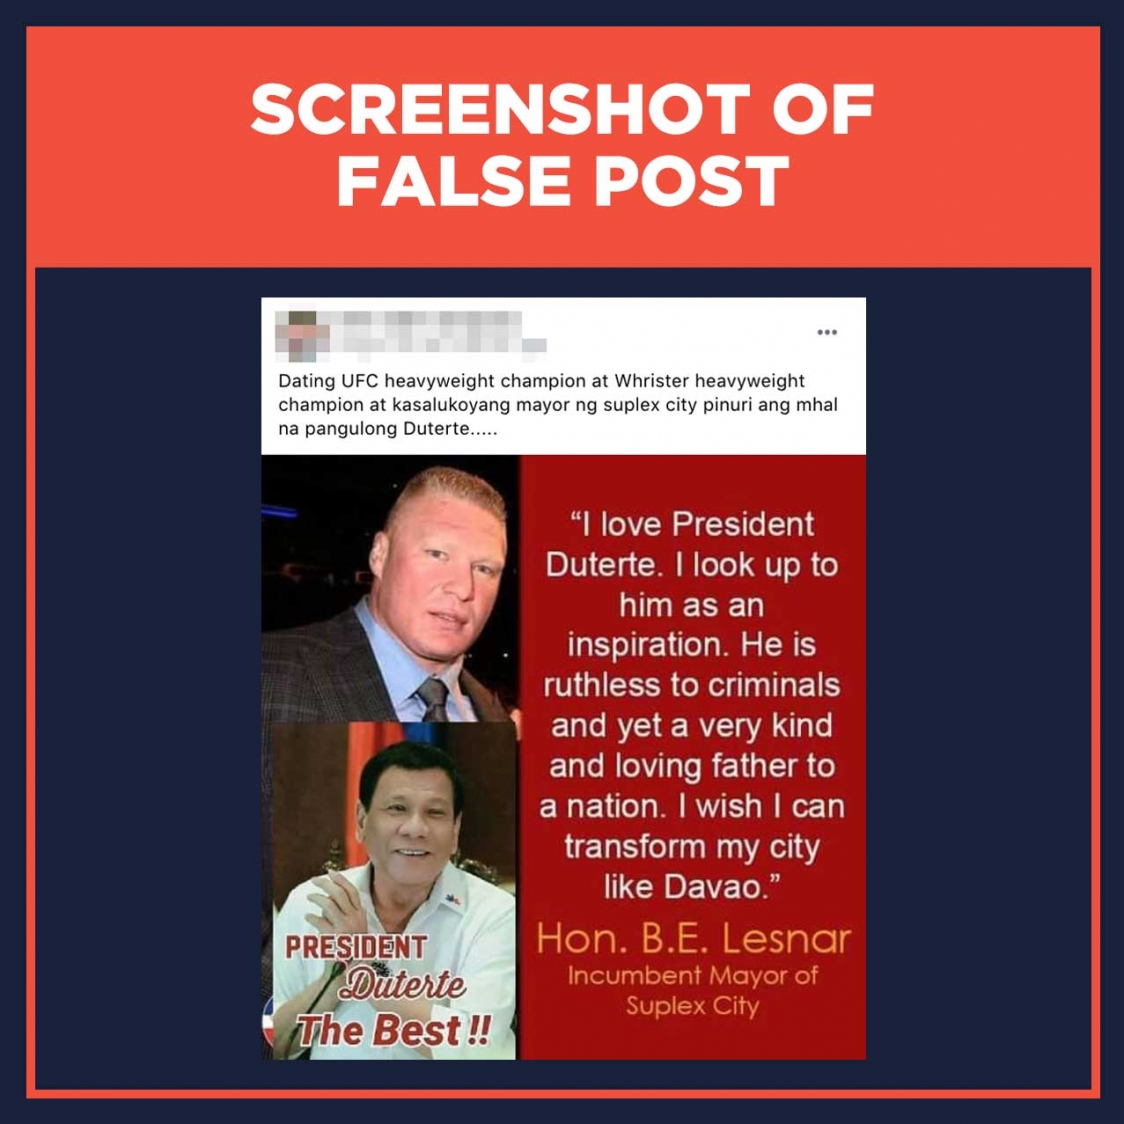 Screenshot of false post Brock Lesnar quote on Duterte